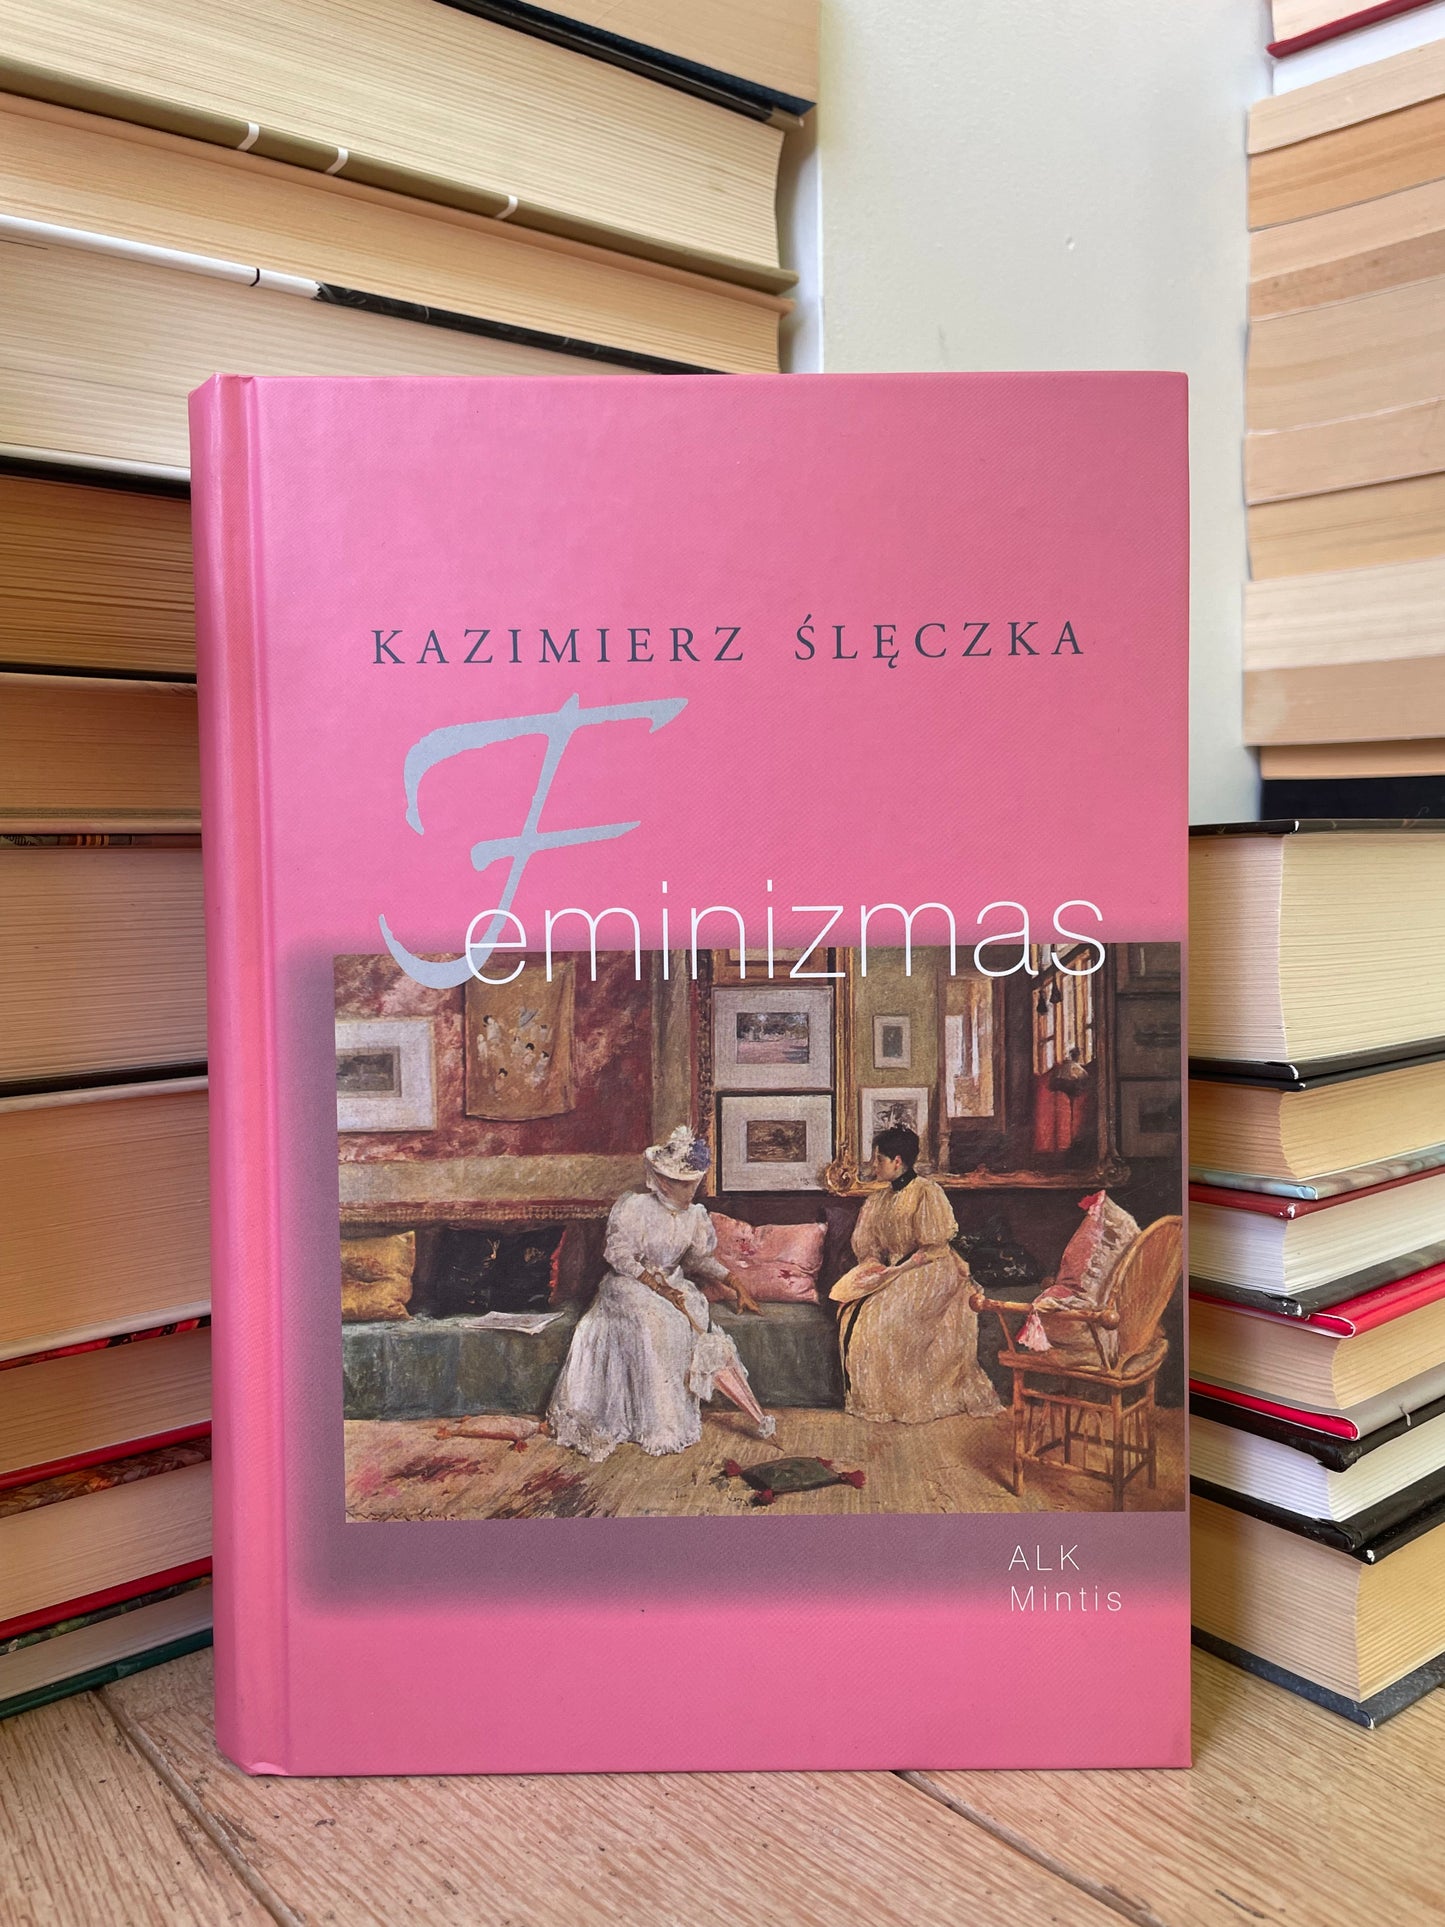 Kazimier Sleczka - ,,Feminizmas"